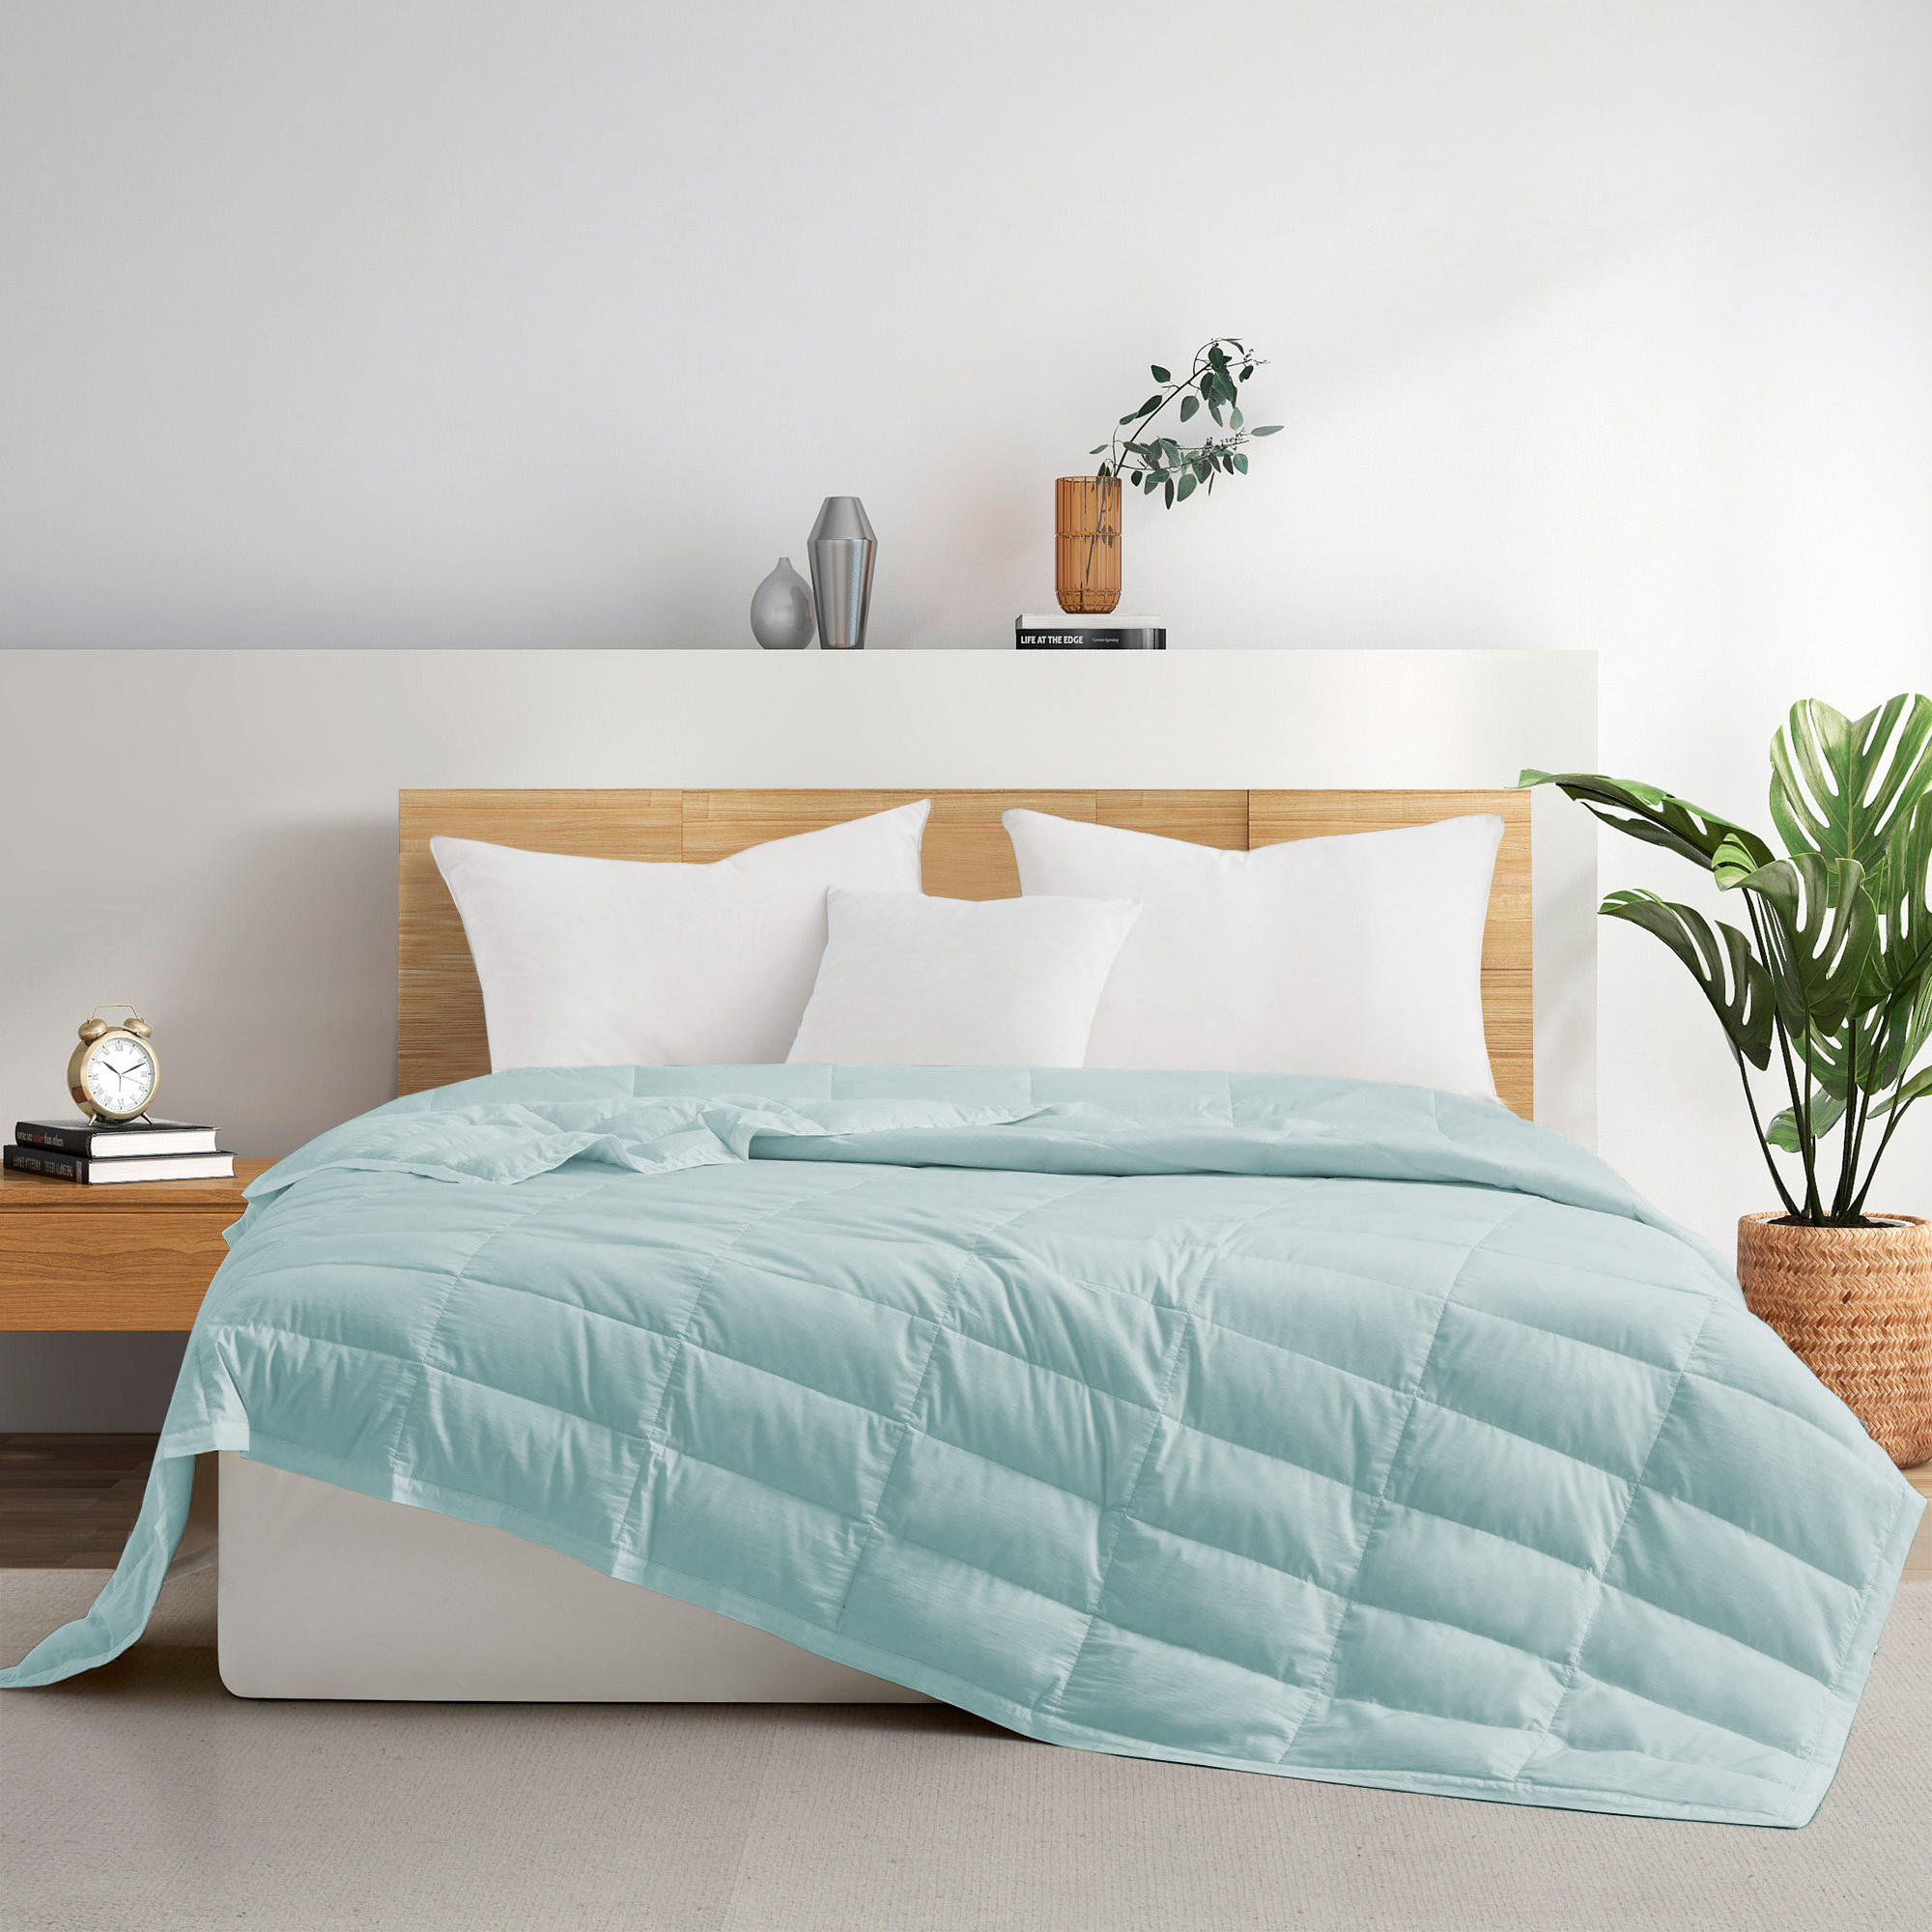 TENCELâ¢ Lyocell Lightweight Cooling Down Blanket-Luxurious Comfort Summer Blanket - Navy Blue, Full/Queen